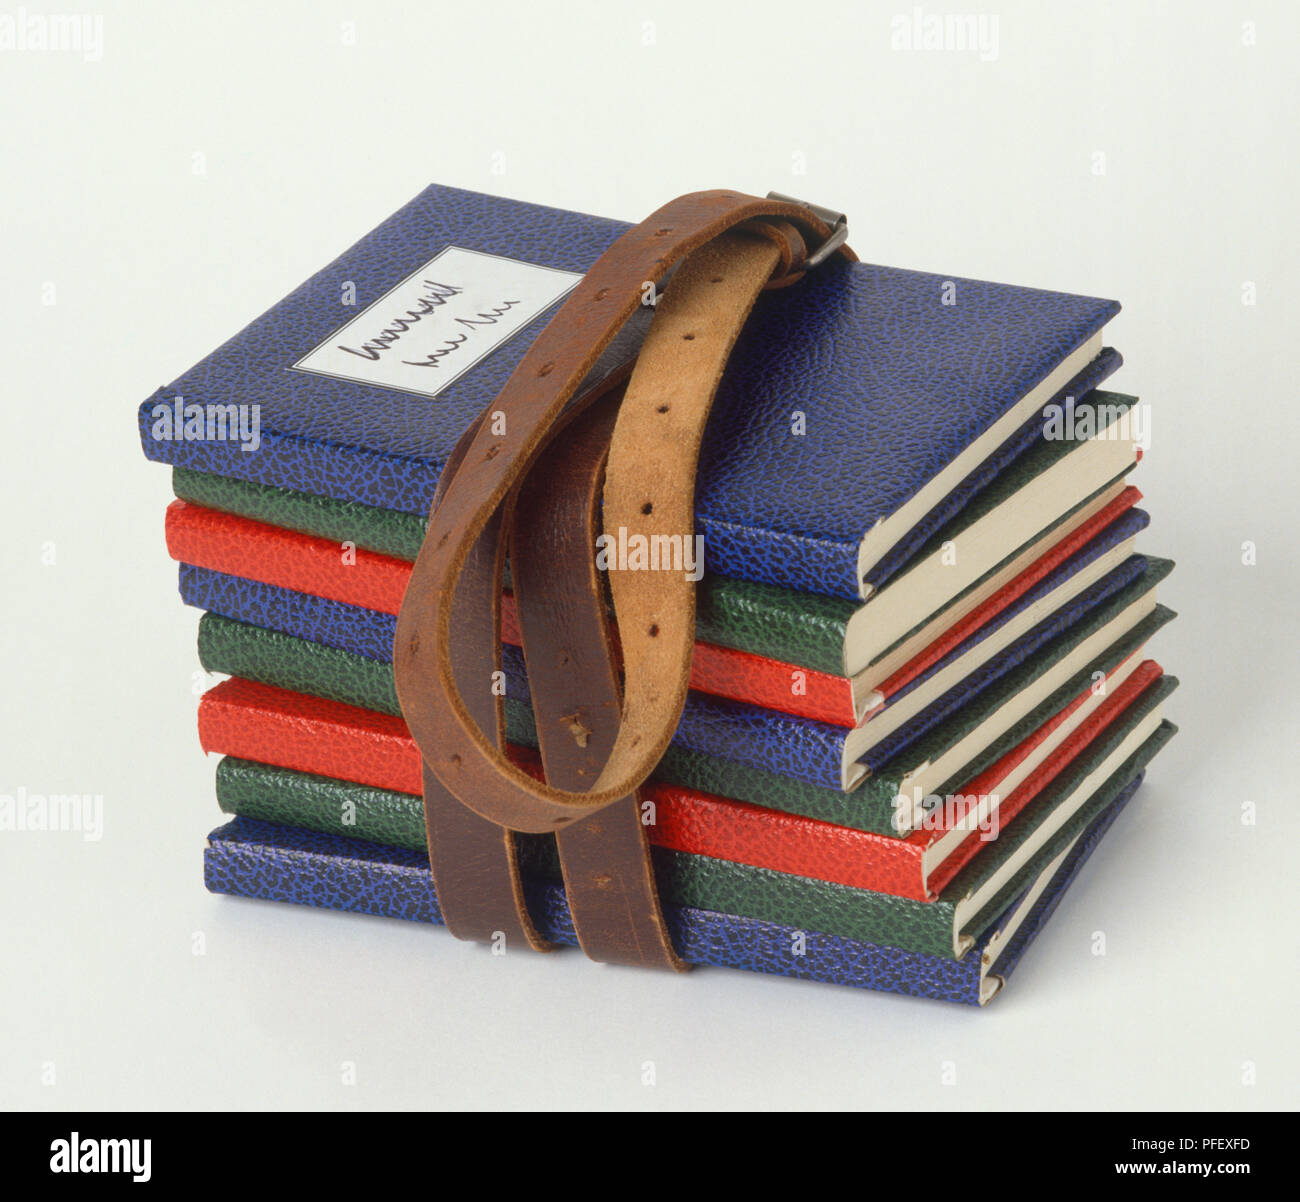 Stapel Bücher mit bunten Leder zusammen mit braunem Leder Gürtel  geschnallt, Seitenansicht Stockfotografie - Alamy